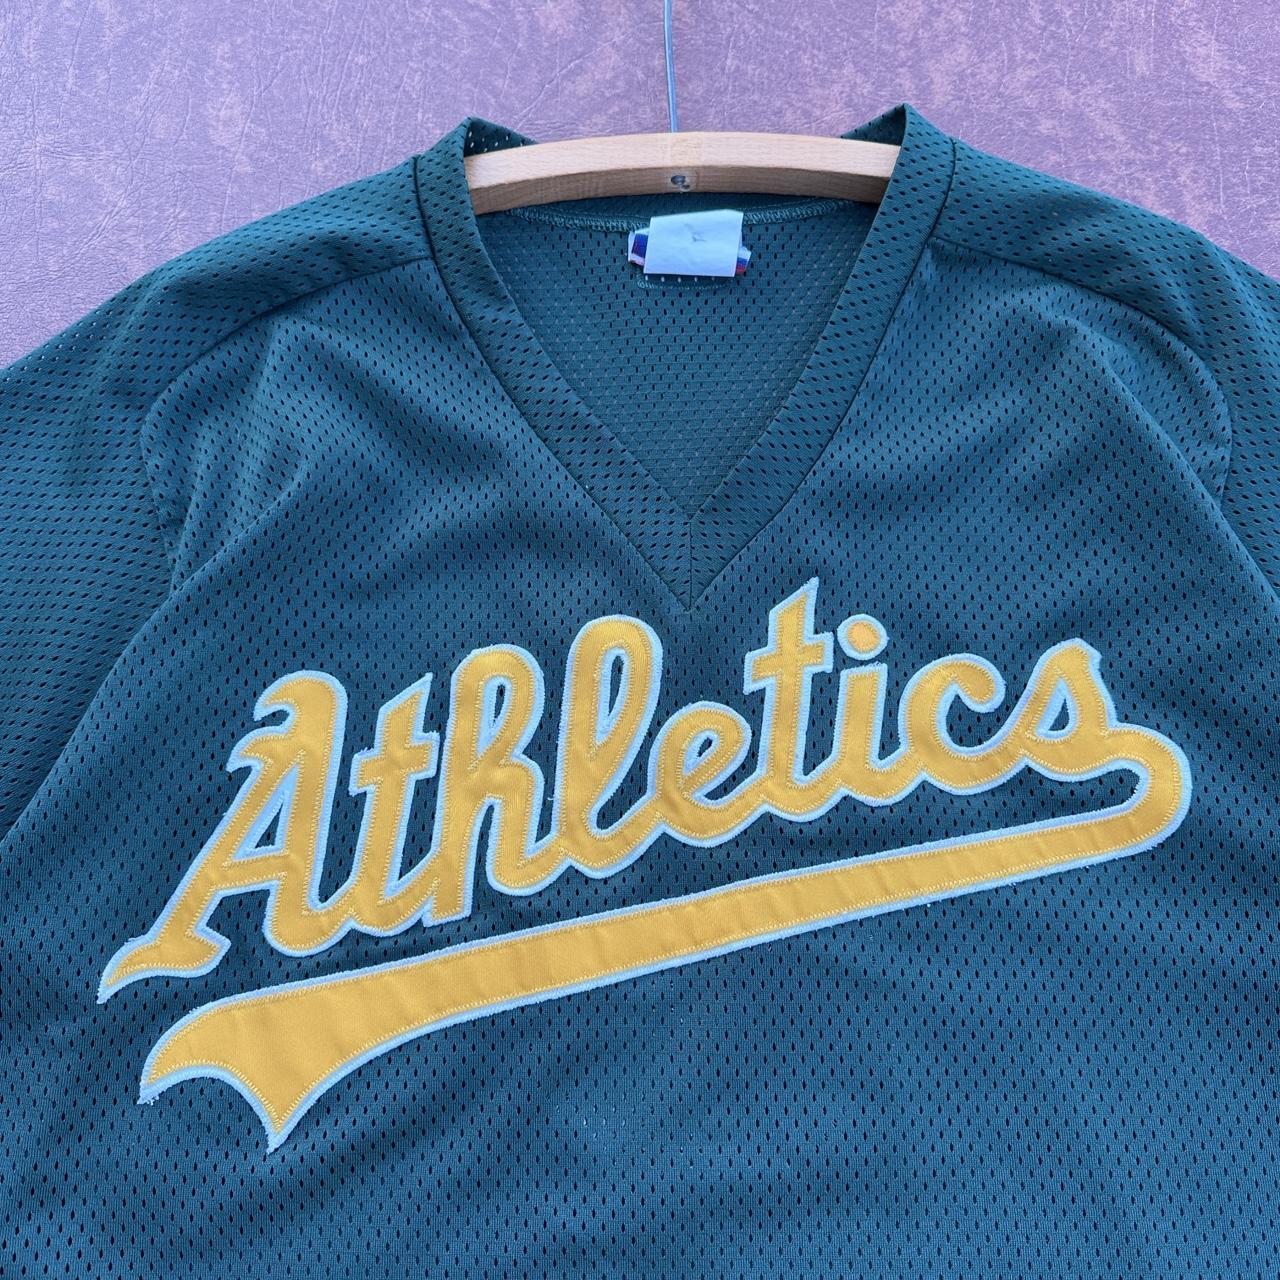 Majestic Oakland athletics gold alternative jersey - Depop